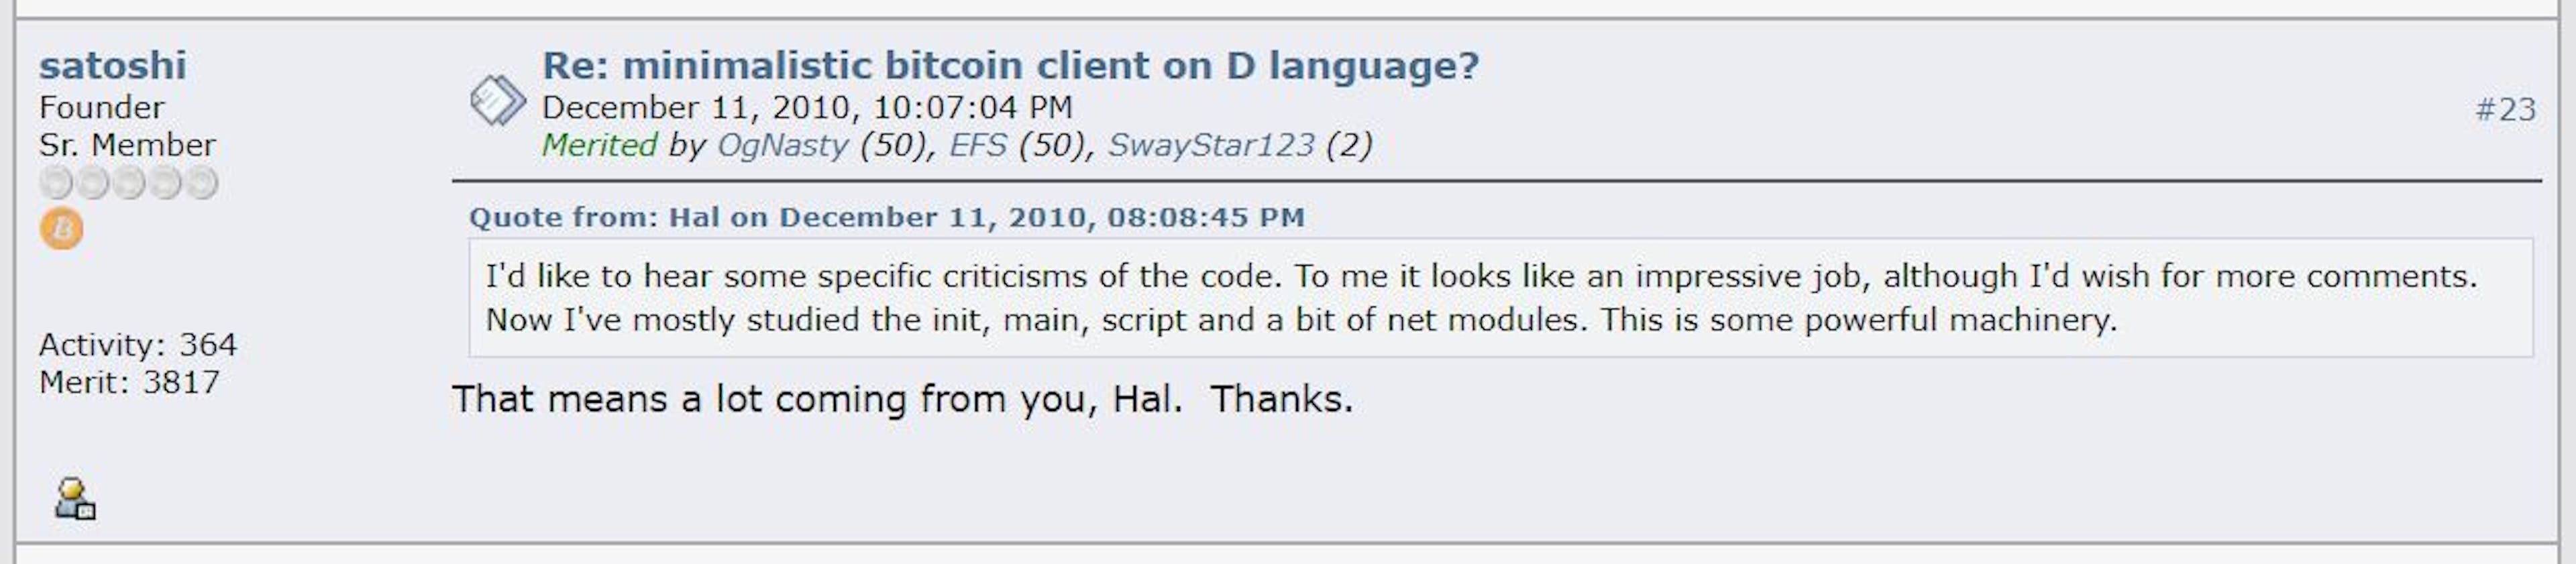 Conversa lendária entre Satoshi Nakamoto e Hal Finney, dois dias antes de Satoshi entrar em sua última postagem no Fórum Bitcoin.